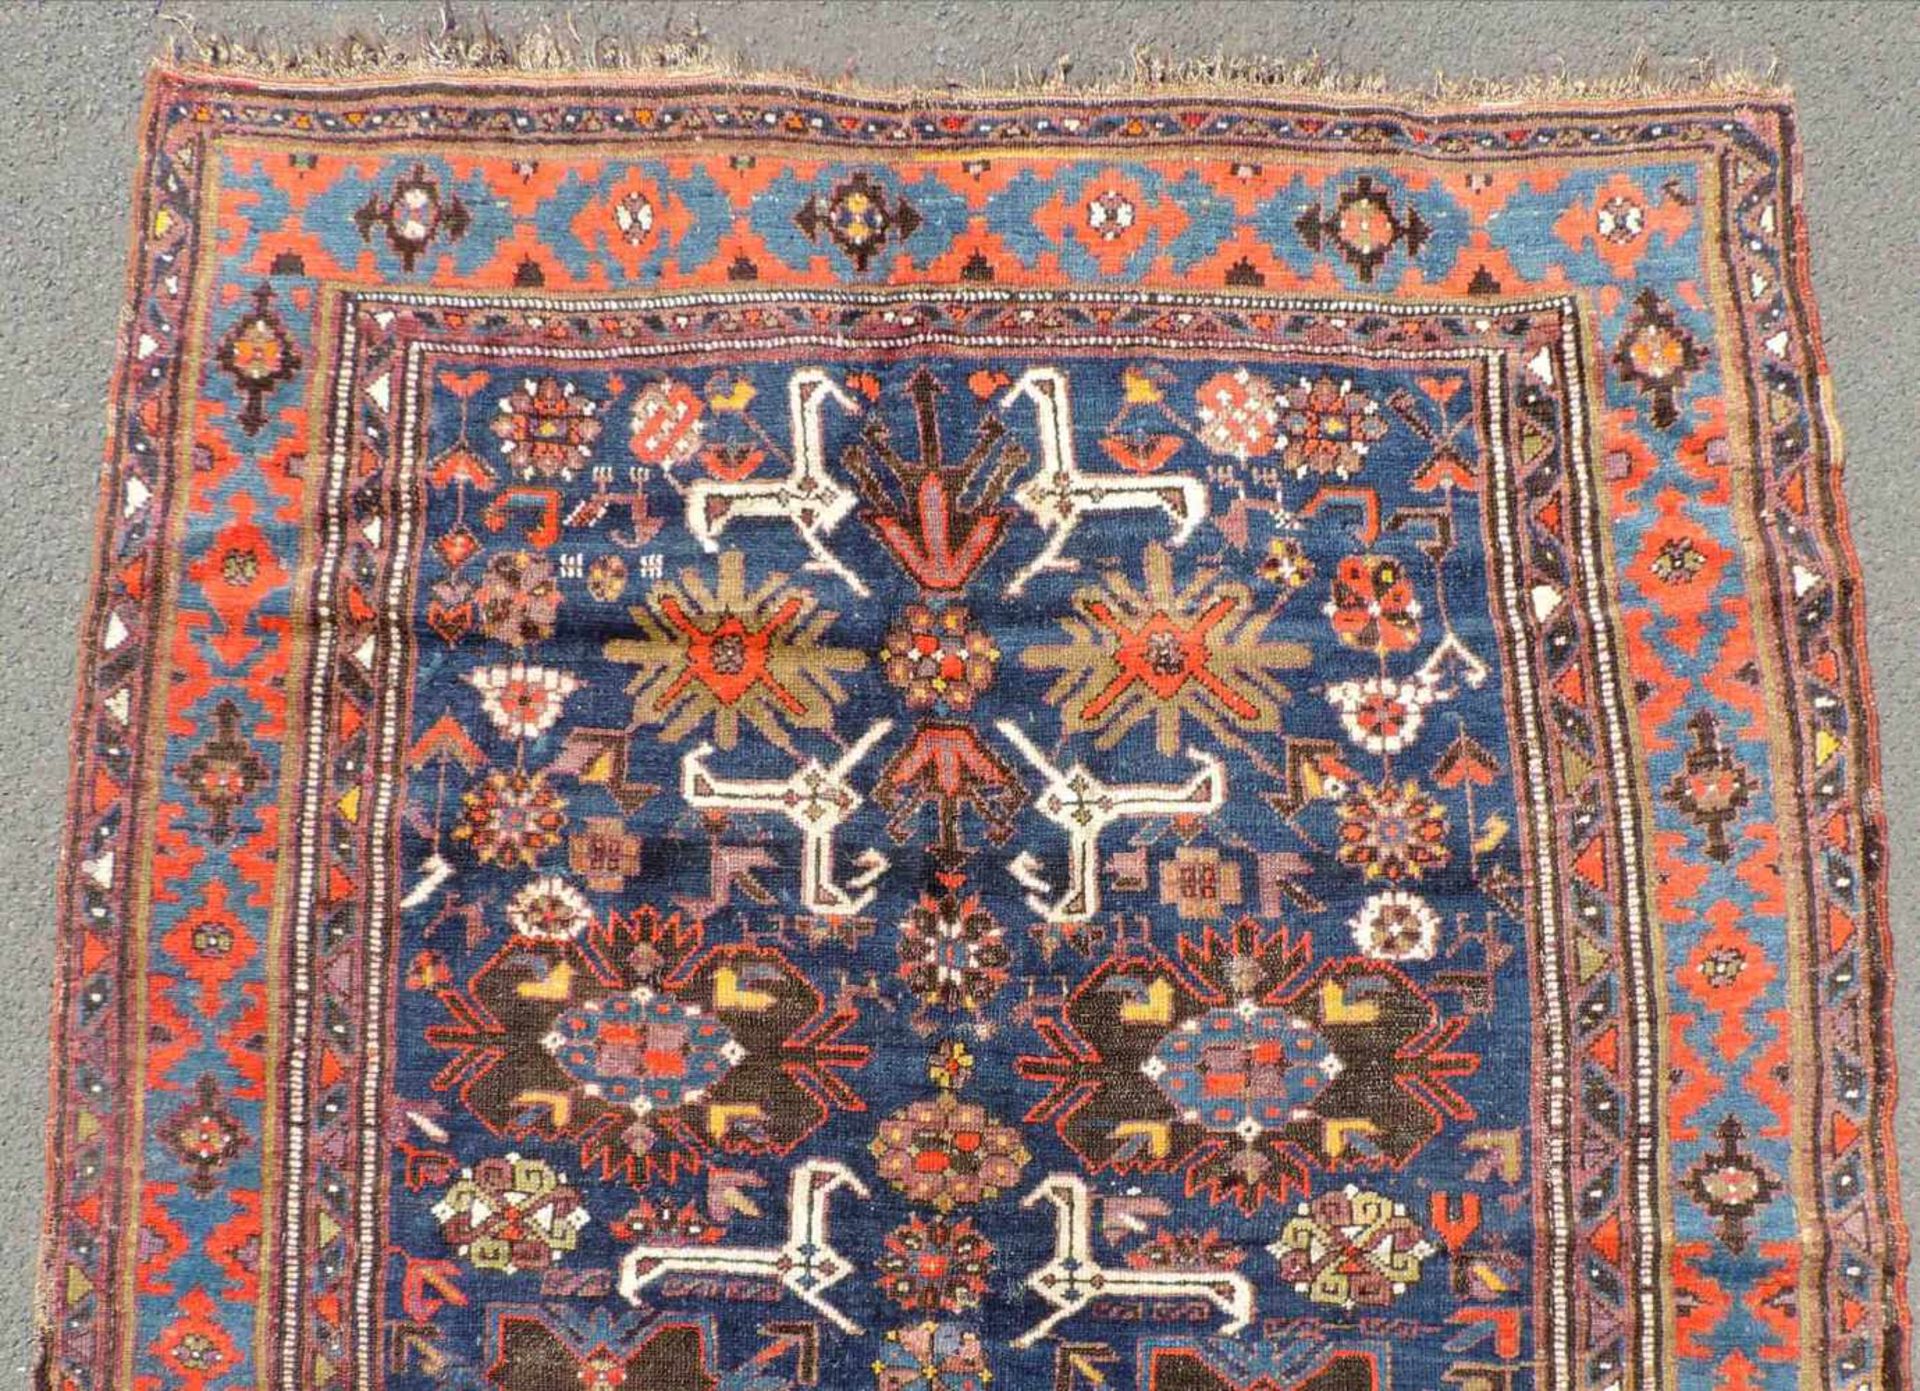 Cuba carpet. Shirvan region. Caucasus. Old, around 1920. - Image 3 of 5